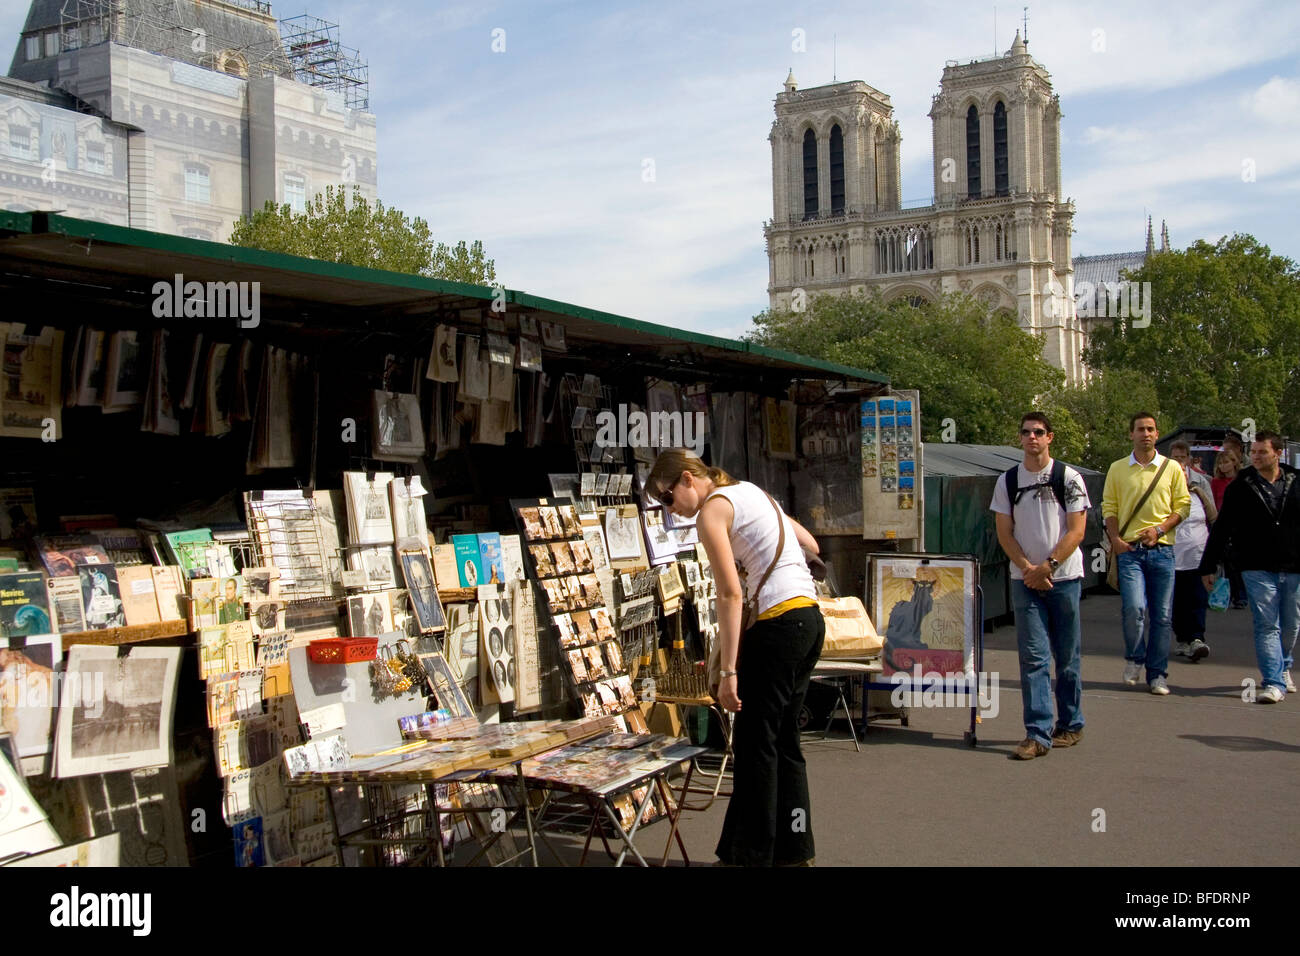 Venditore ambulante di fronte alla facciata occidentale della cattedrale di Notre Dame de Paris, Francia. Foto Stock